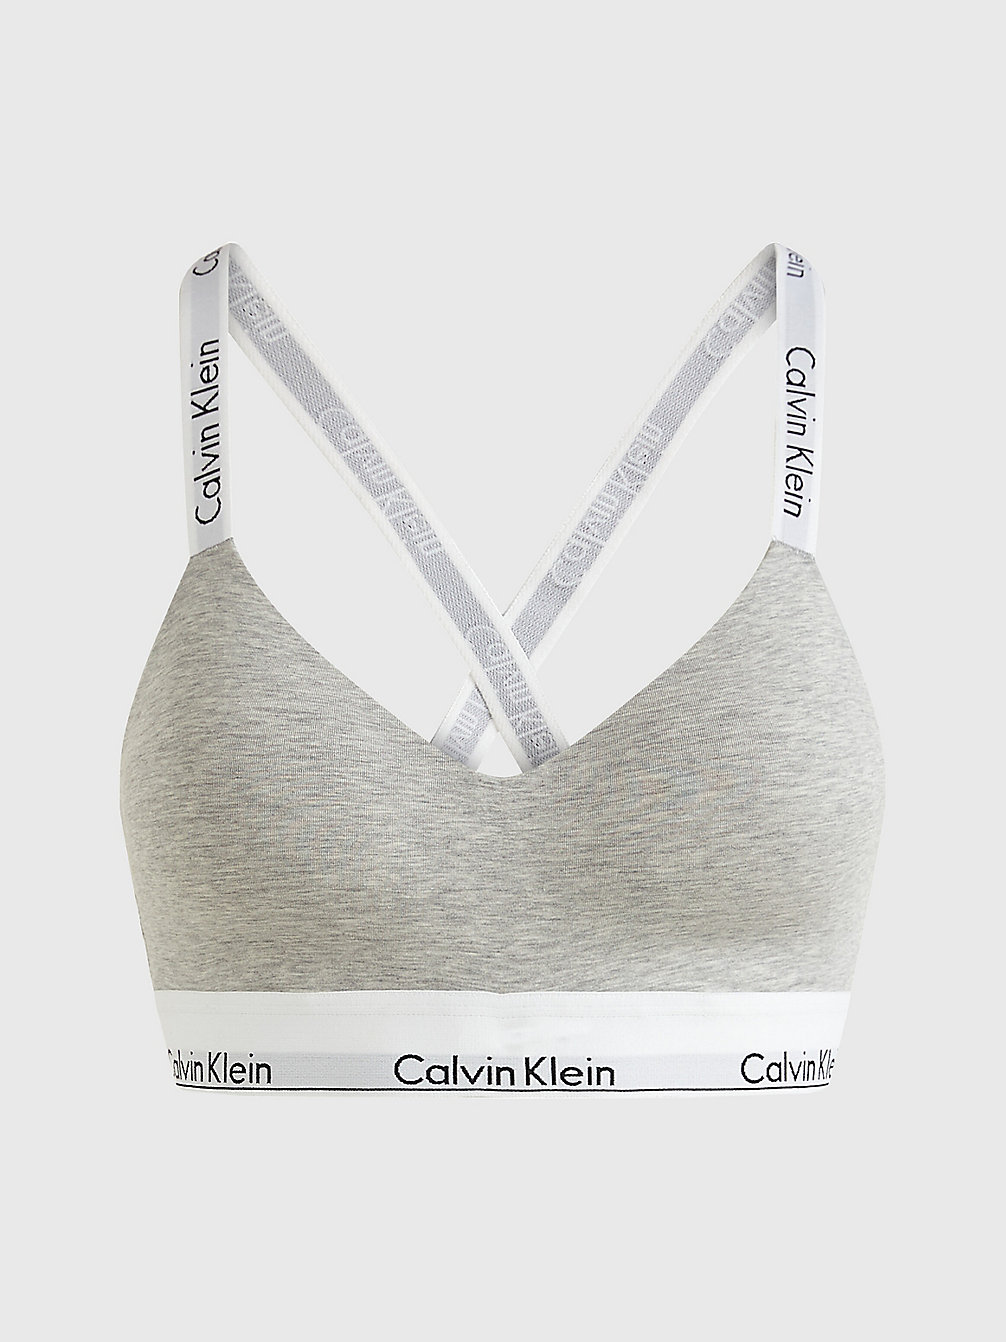 GREY HEATHER > Bralette - Modern Cotton > undefined dames - Calvin Klein